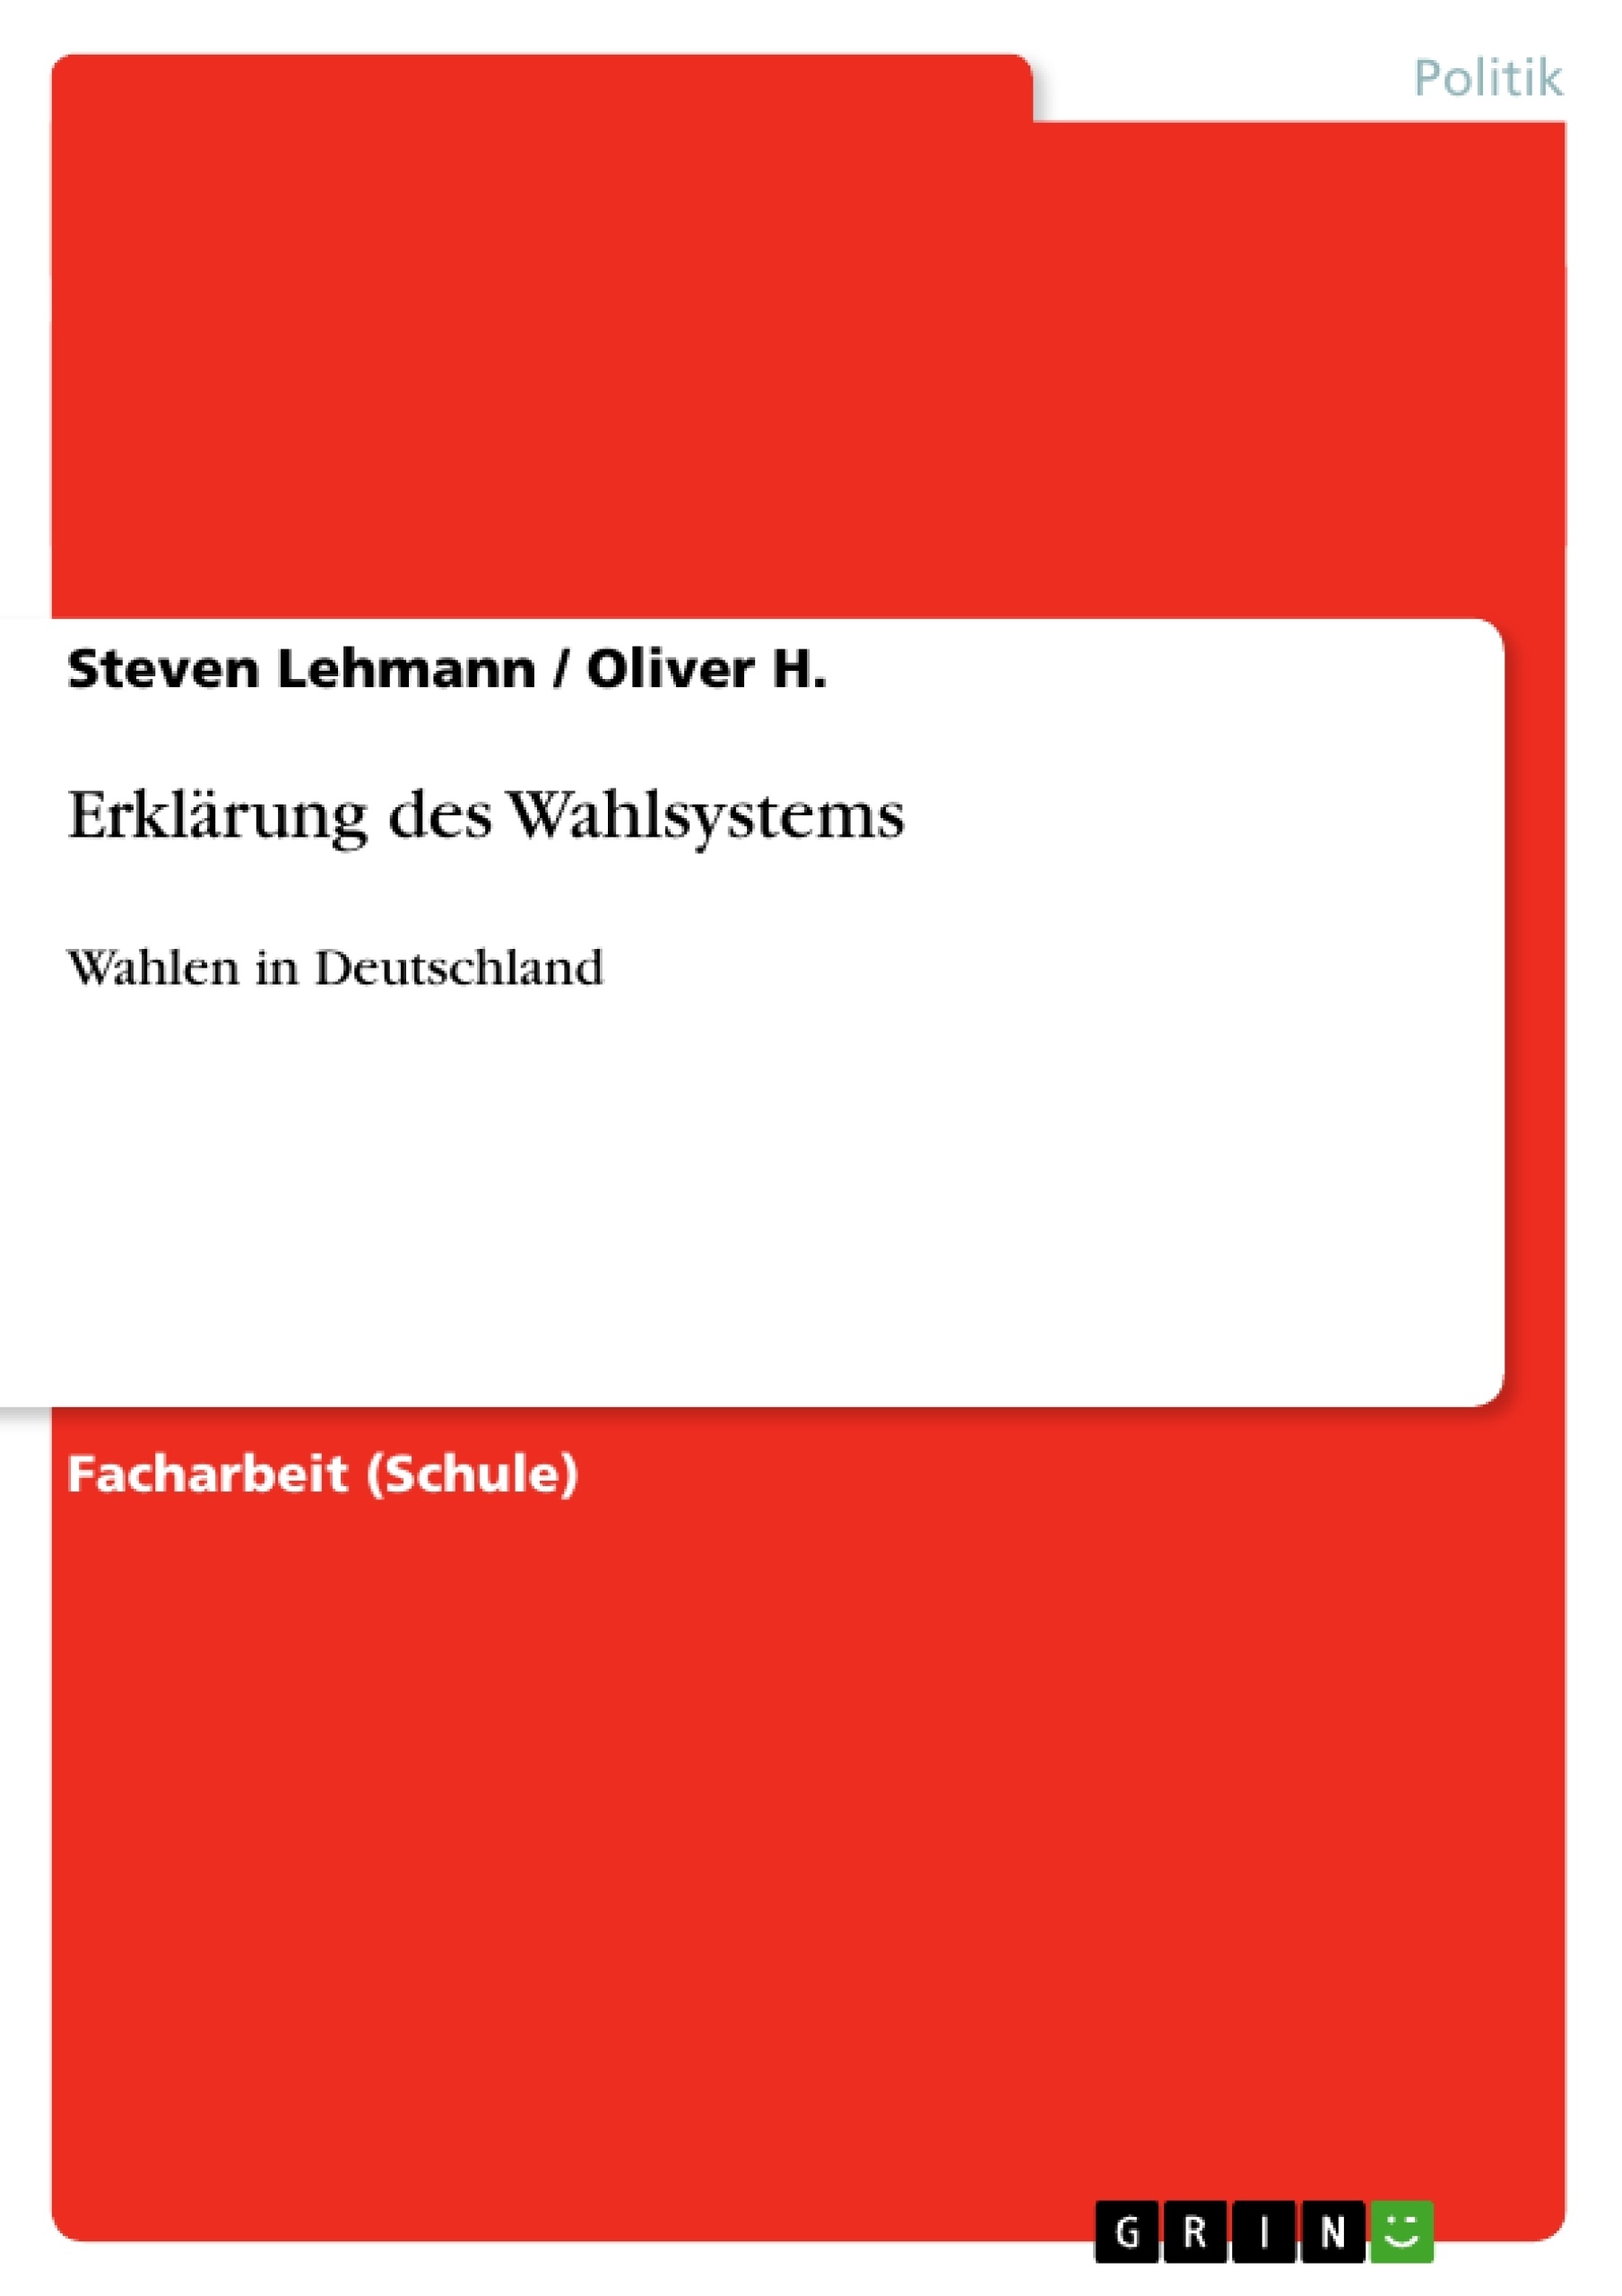 Title: Erklärung des Wahlsystems